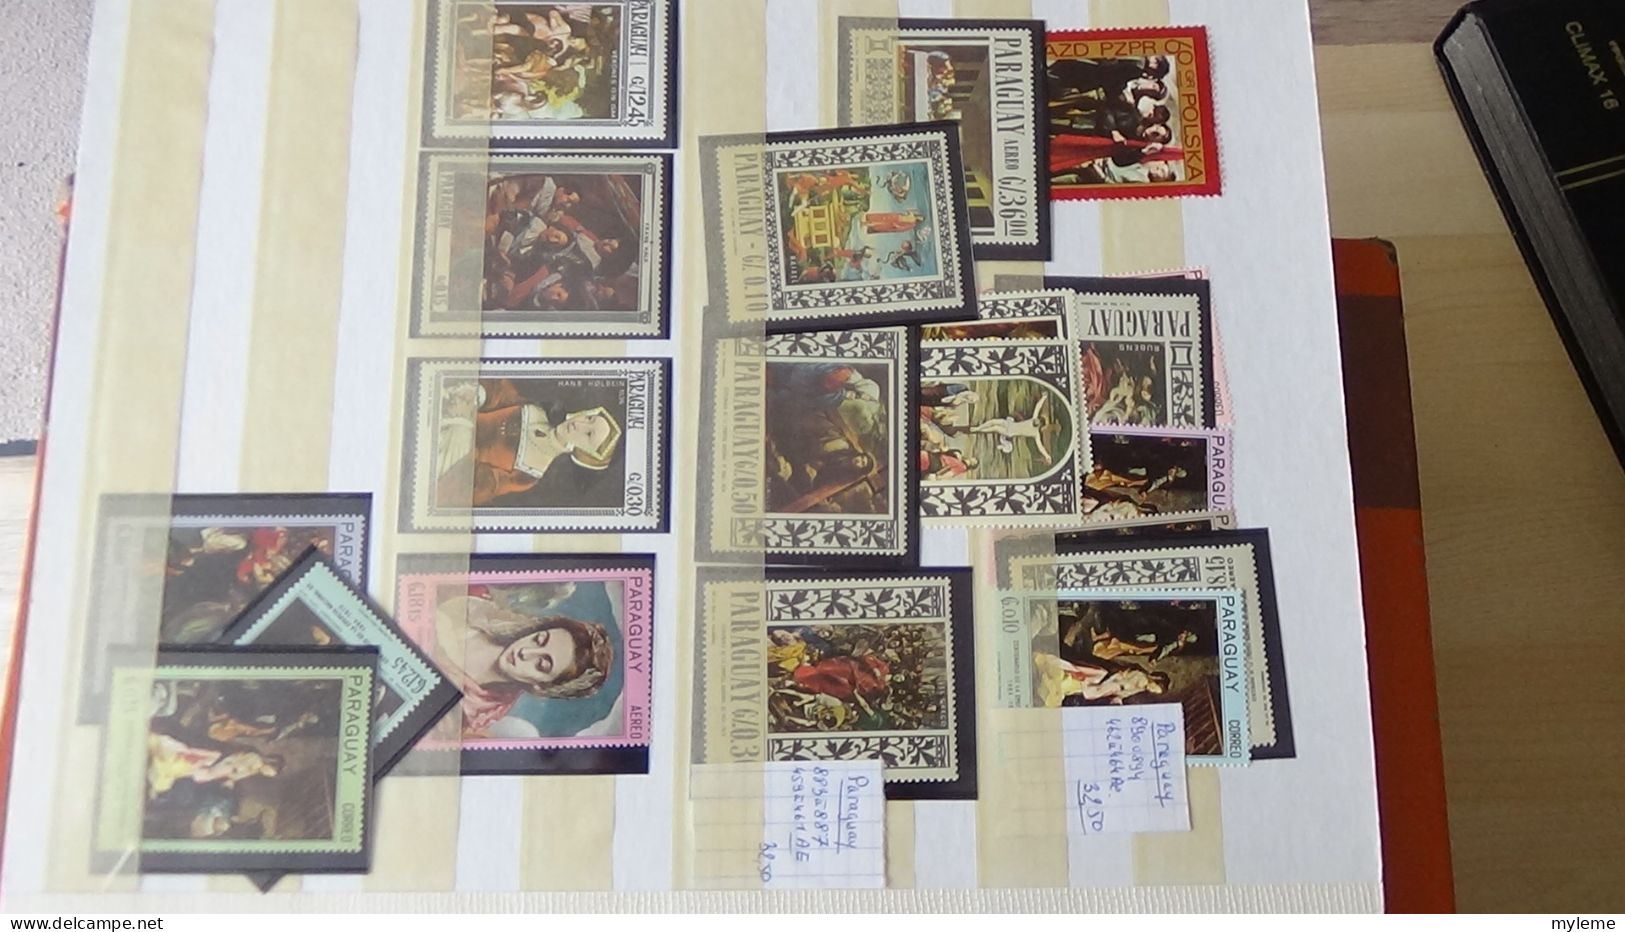 BF53 Bel ensemble de timbres de divers pays + plaquette de timbres **. A saisir !!!